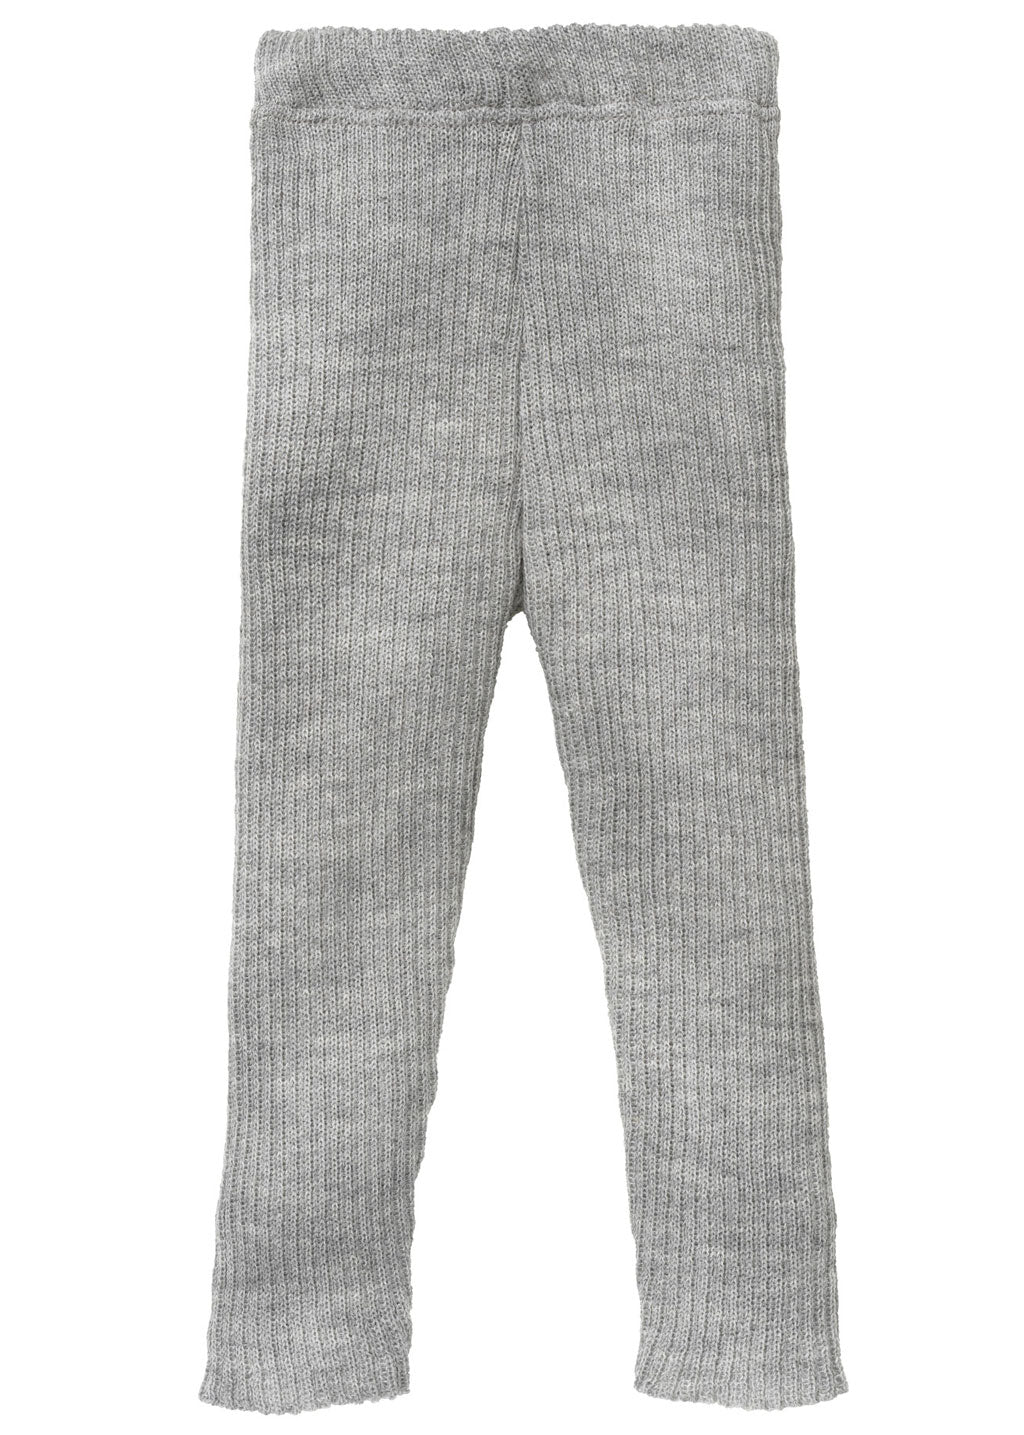 Disana ribbed wool winter leggings in gray